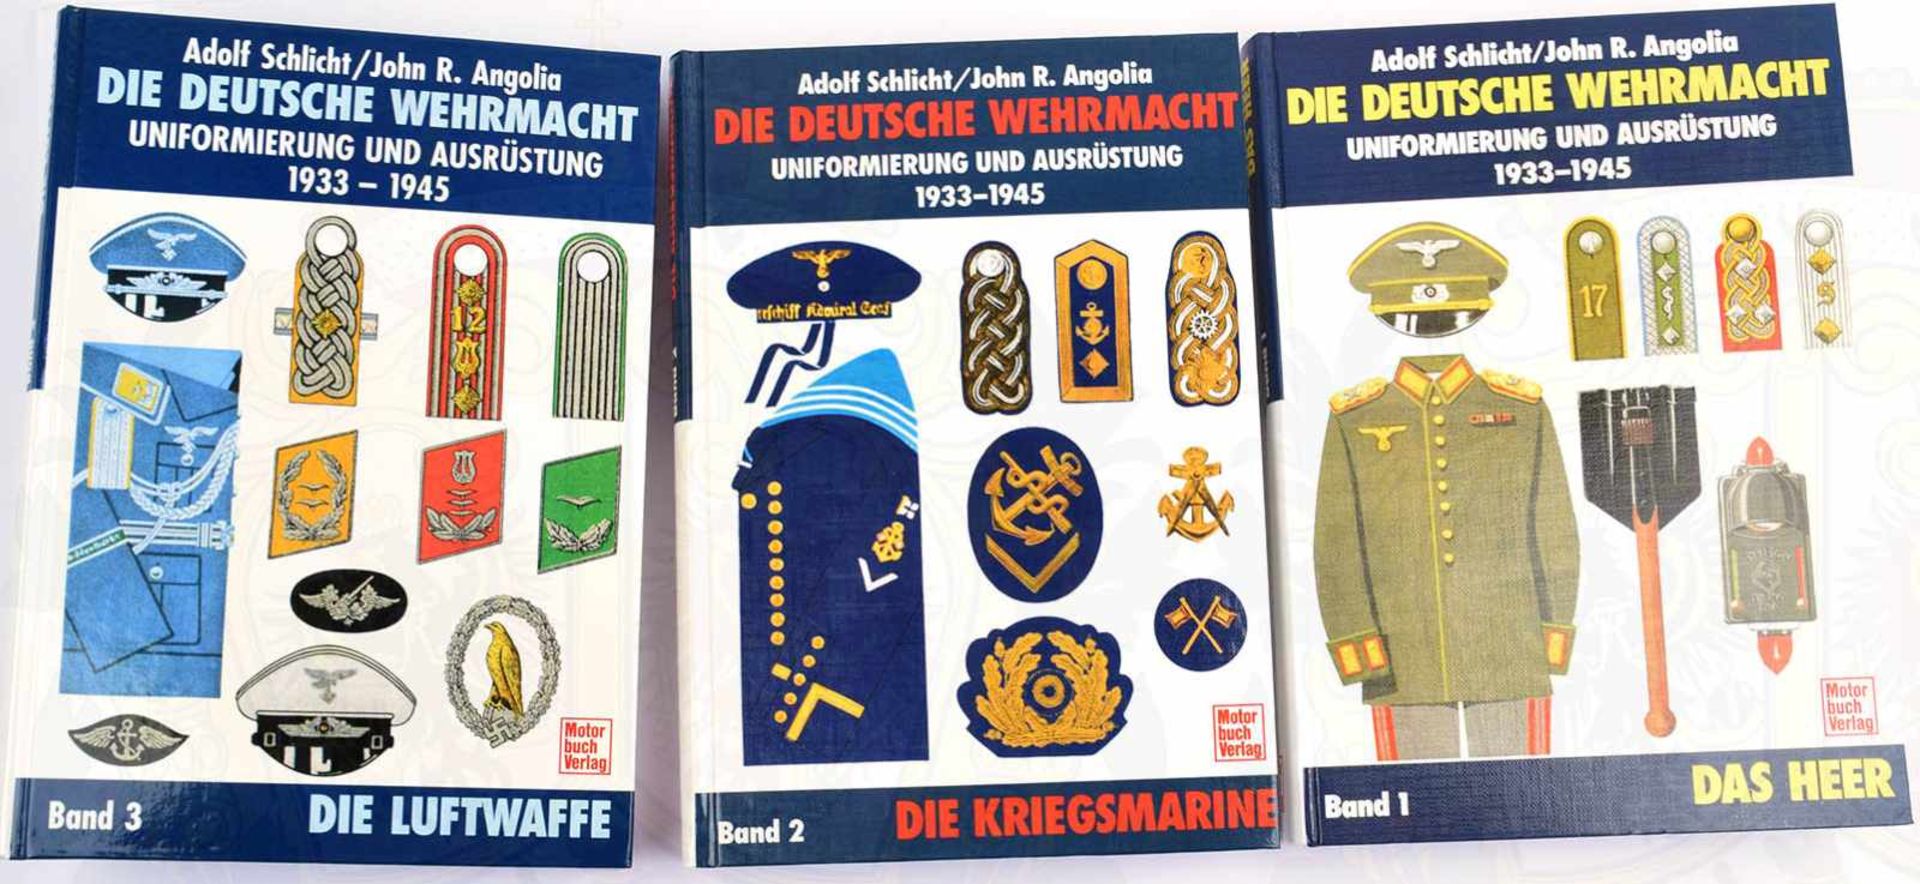 DIE DEUTSCHE WEHRMACHT, Uniformierung u. Ausrüstung 1933-1945, Schlicht/Angolia, 3 Bde. kpl. Heer,